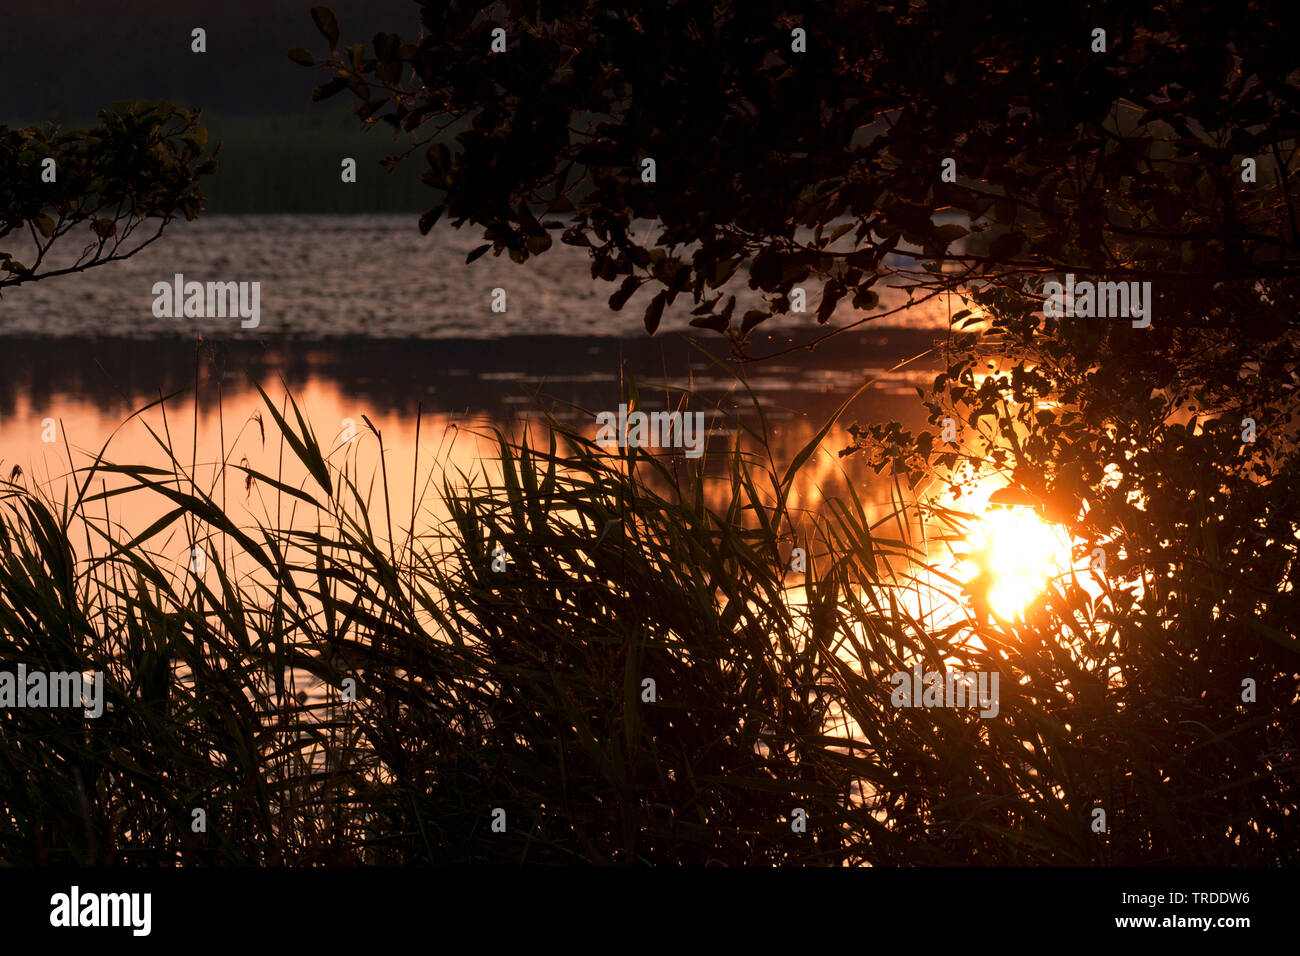 Weerribben bei Sonnenaufgang, Niederlande, Overijssel, Nationalpark Weerribben-Wieden Stockfoto